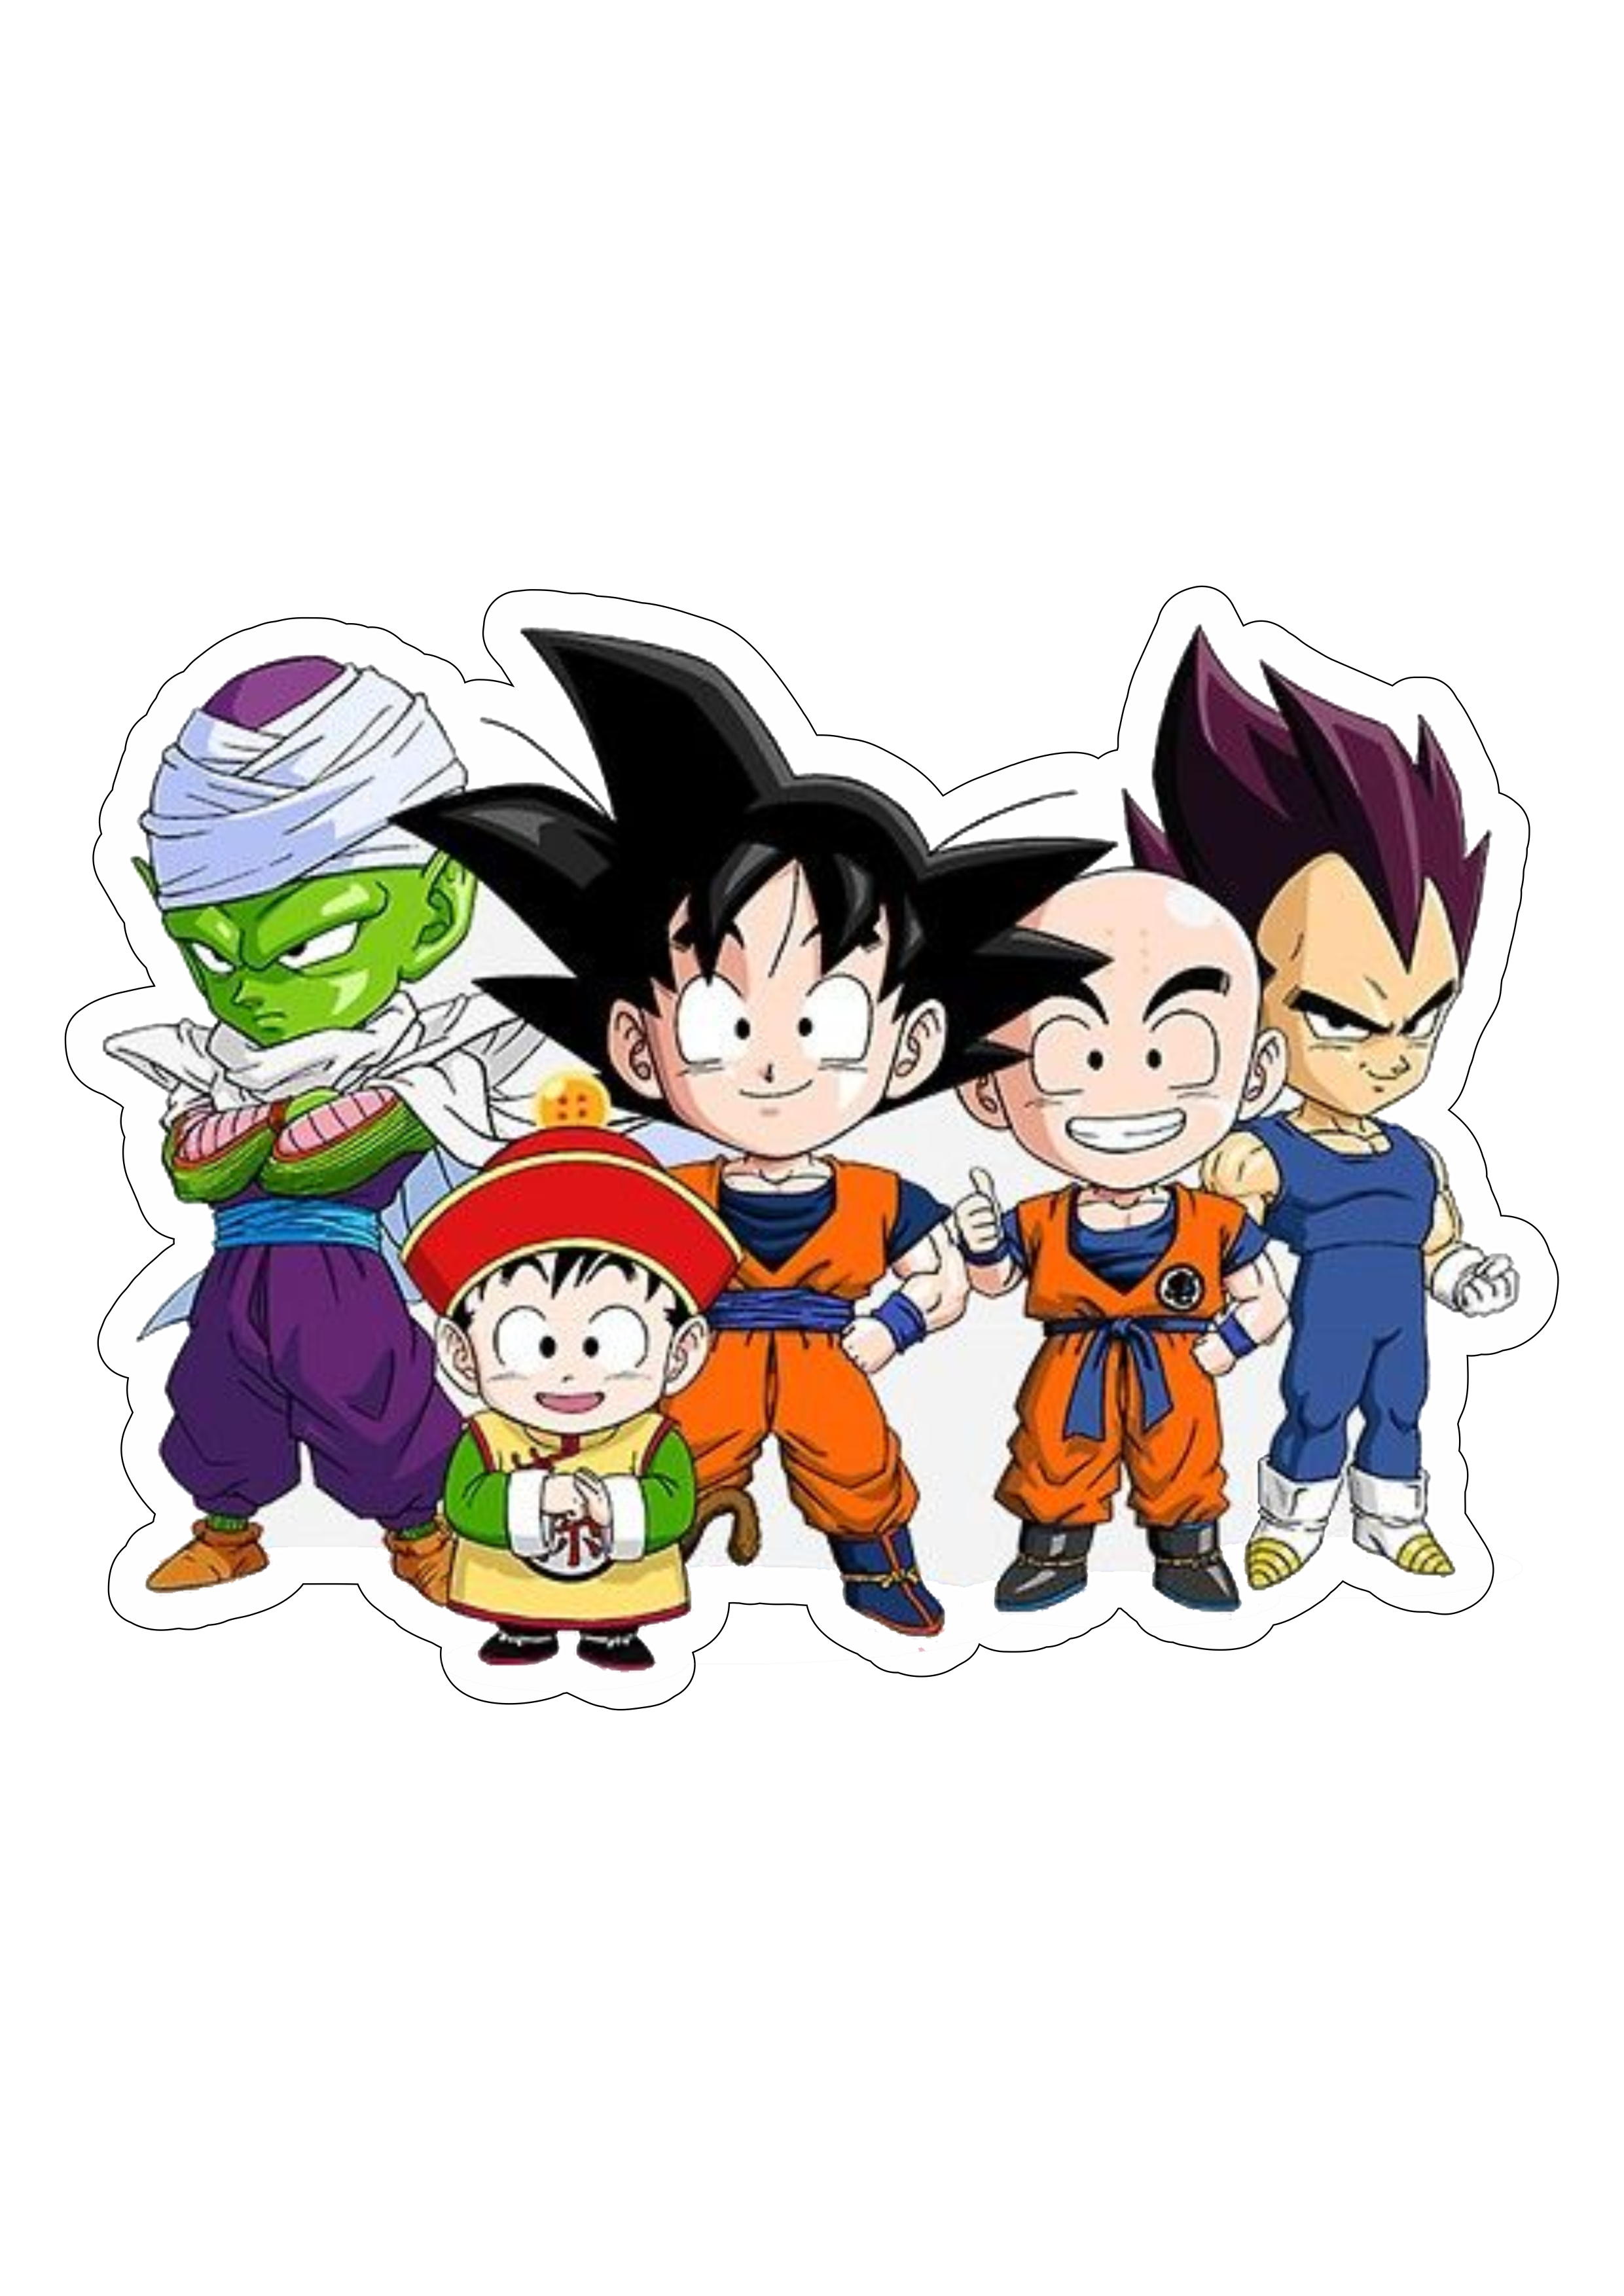 Dragon ball z super Goku guerreiros Z cute desenho infantil anime fundo transparente pack de imagens png